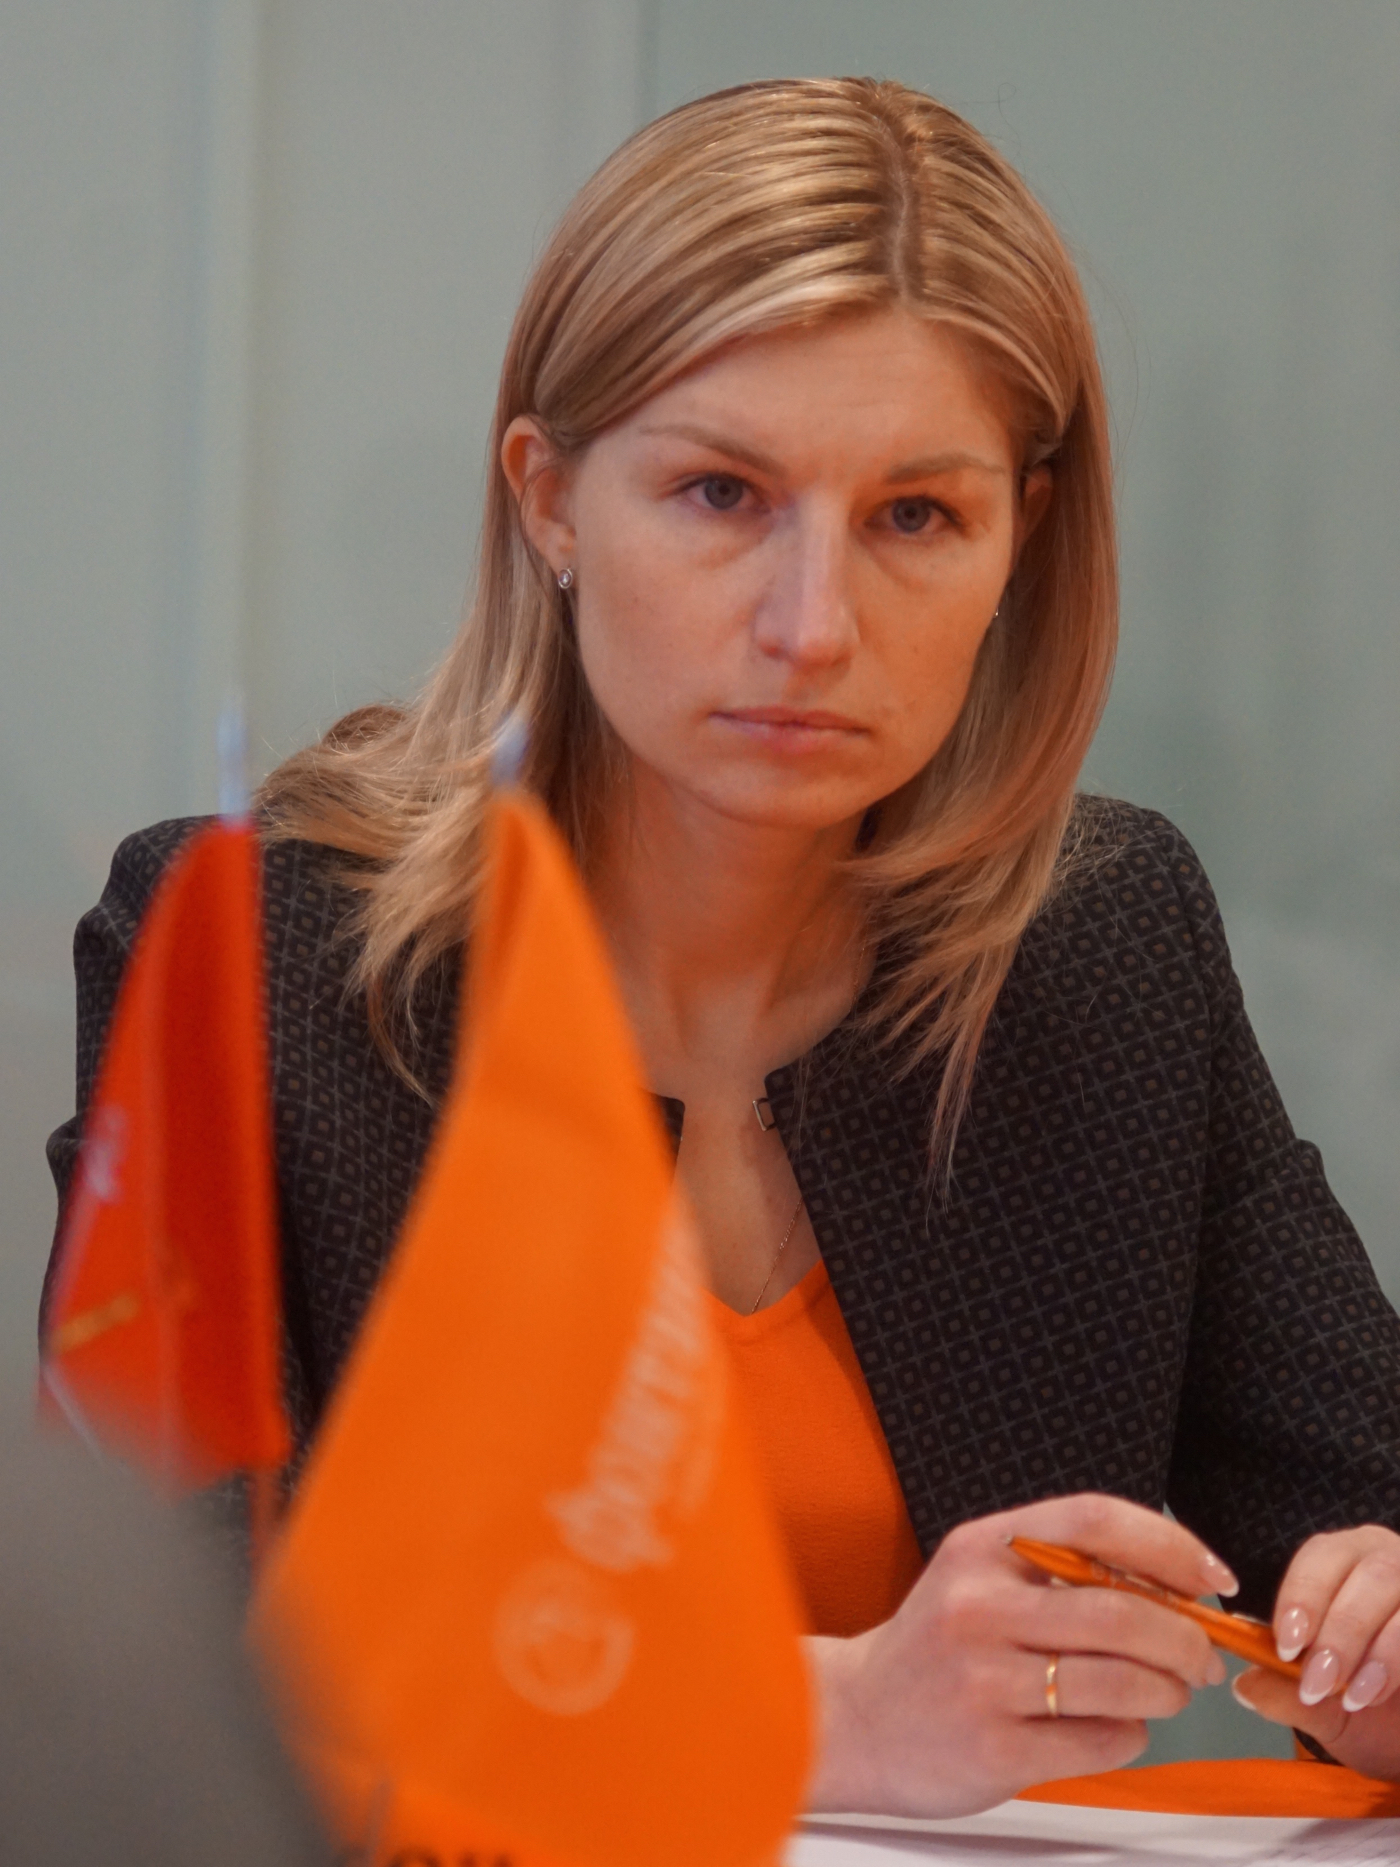 Шенрок Елена Евгеньевна — Управляющий директор по малому бизнесу Северо-Западного региона ПАО «Банк УРАЛСИБ»